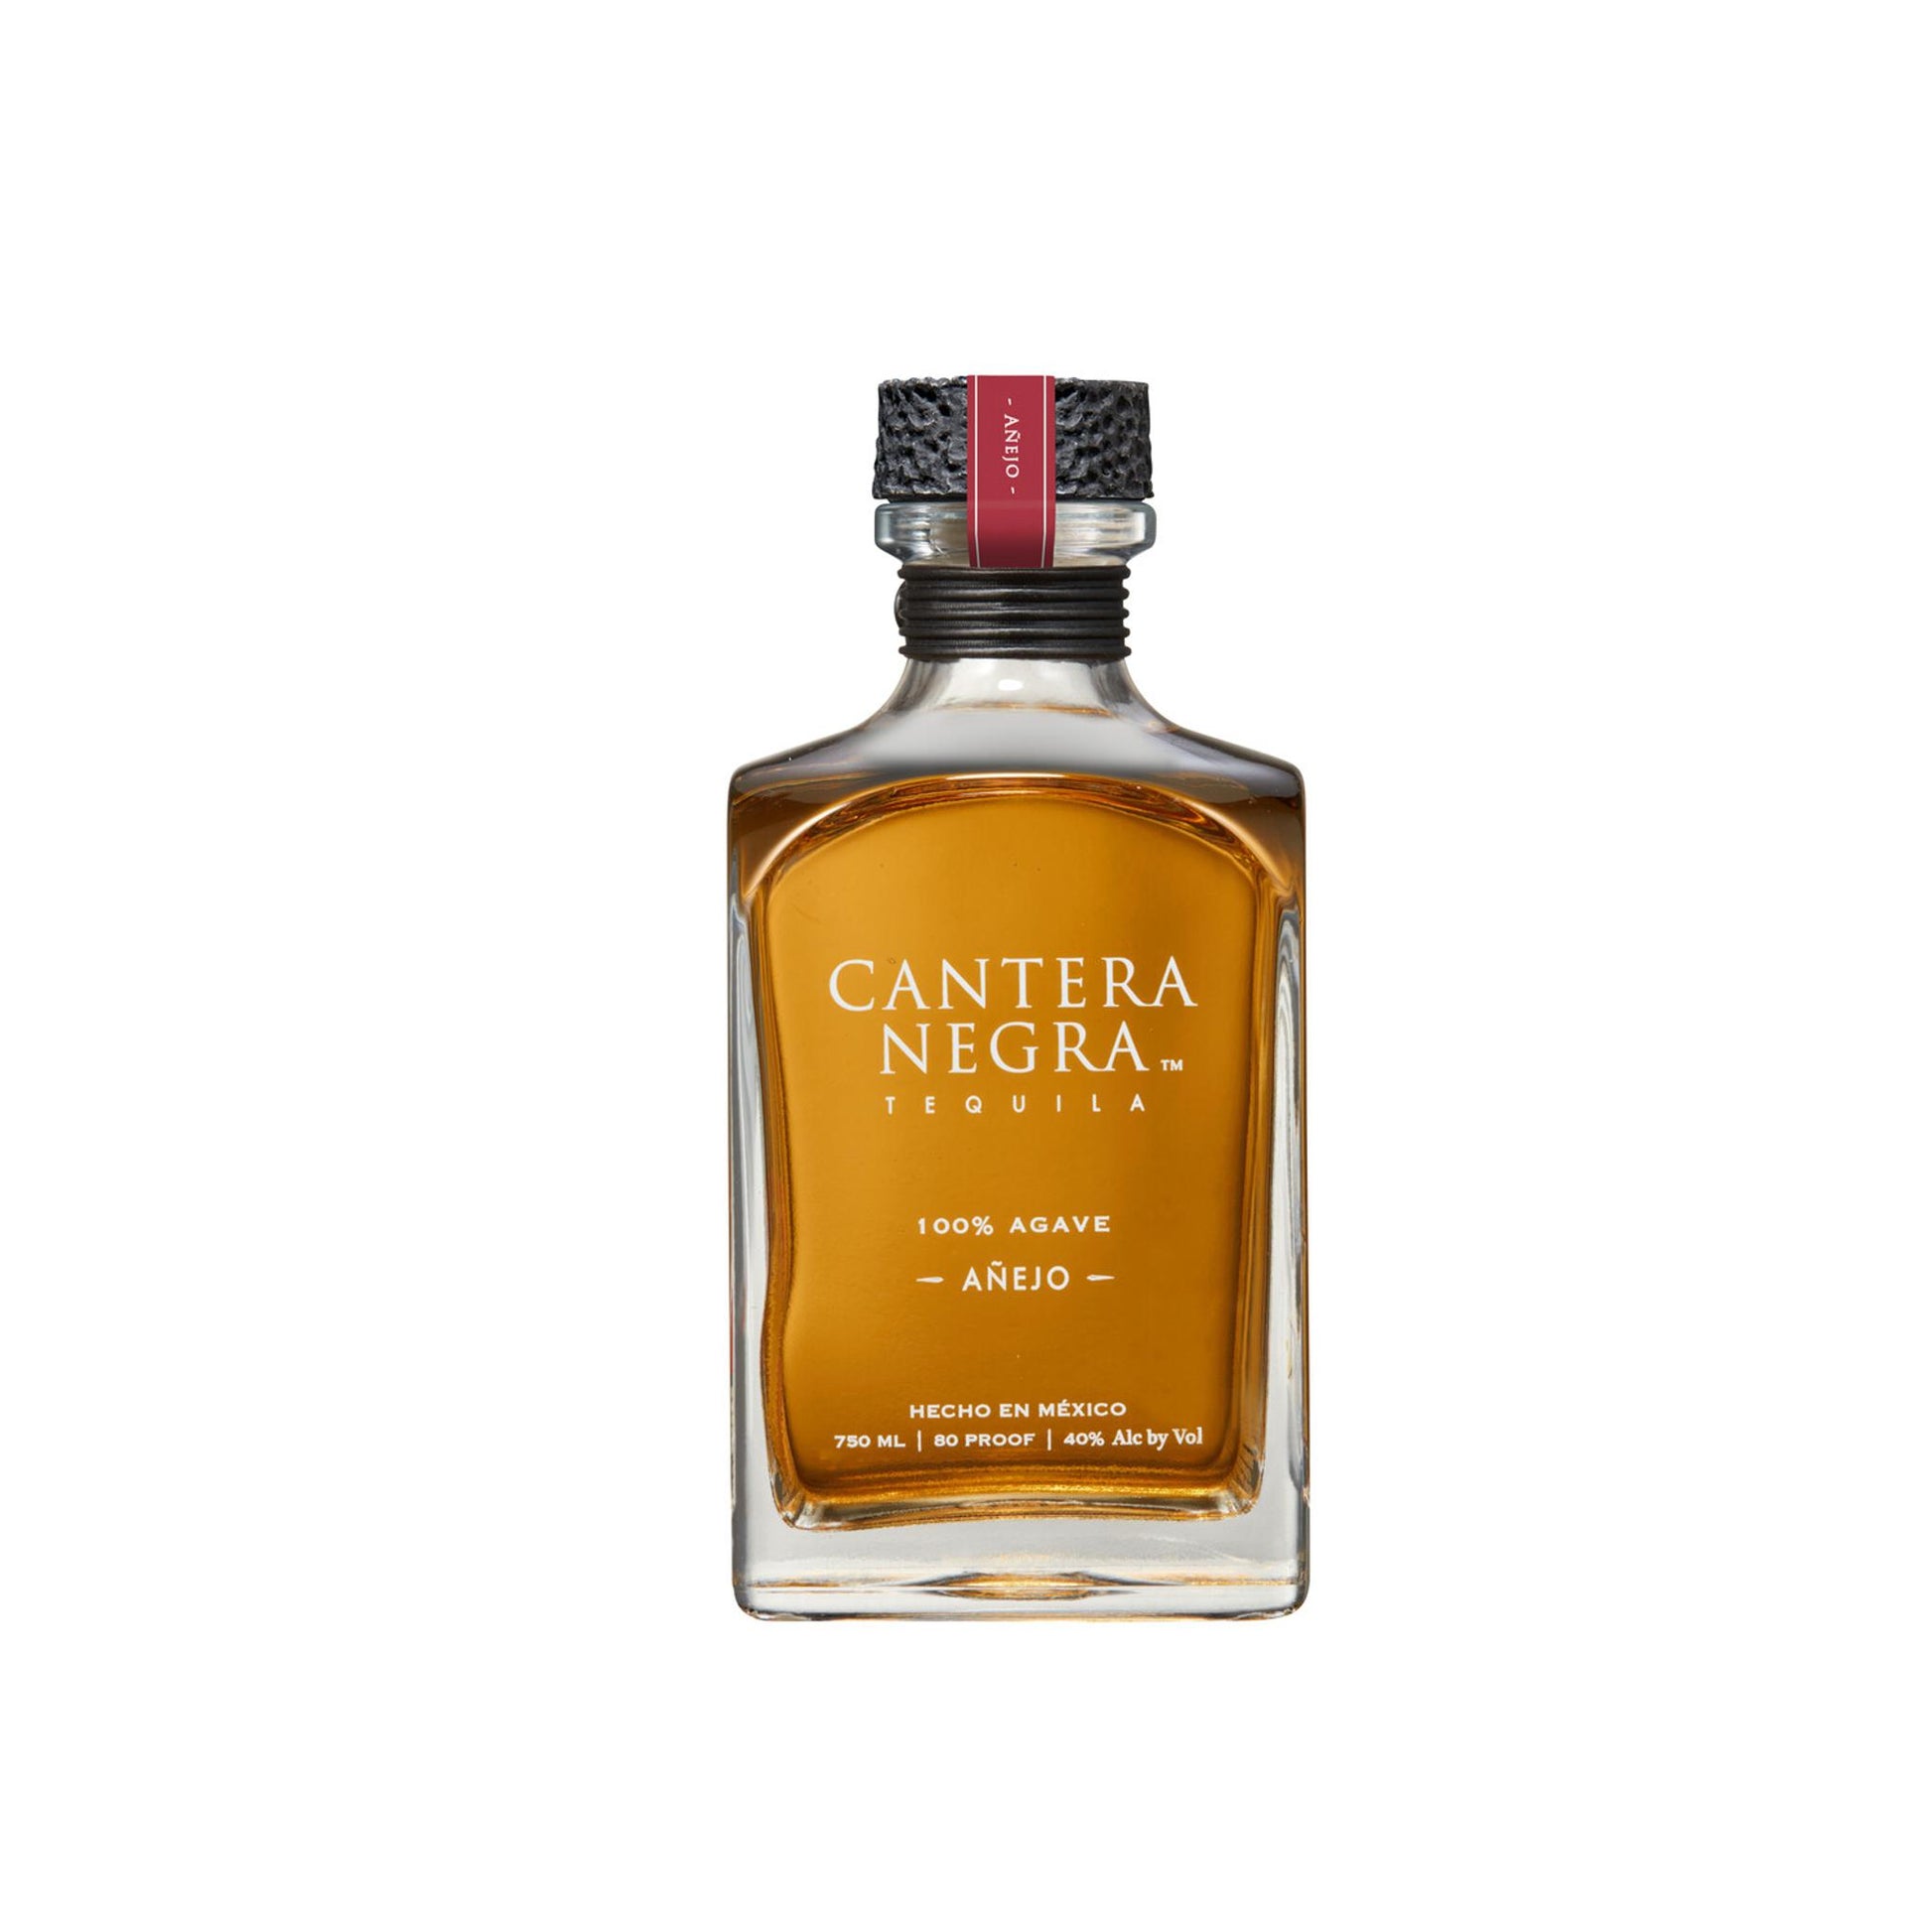 Cantera Negra Tequila Anejo - Liquor Geeks